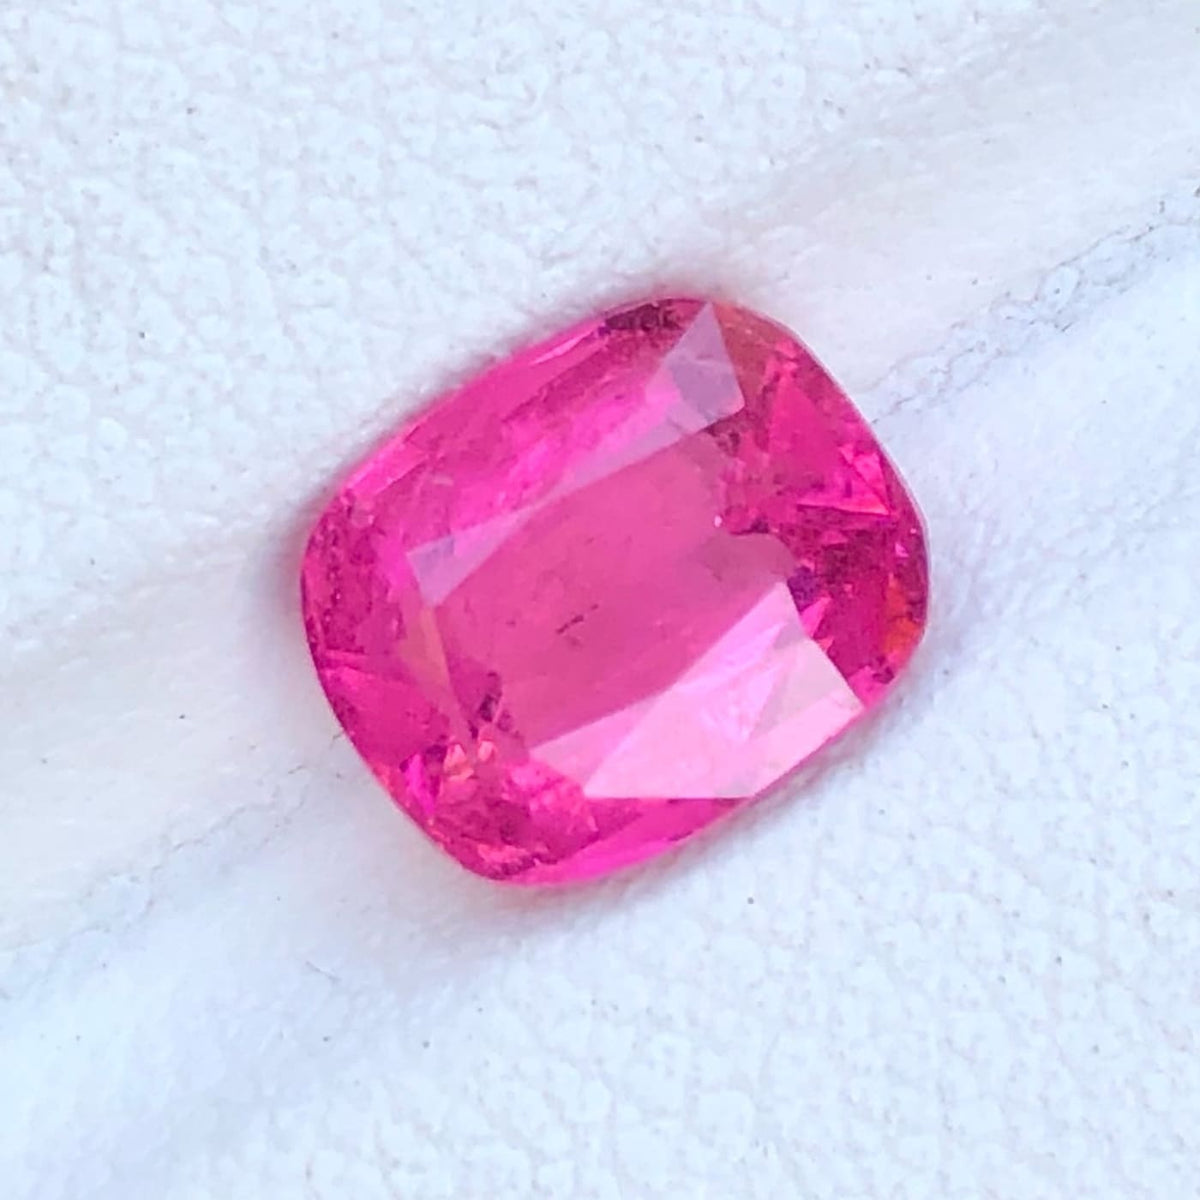 Hot Pink Tourmaline - 1.90 carats